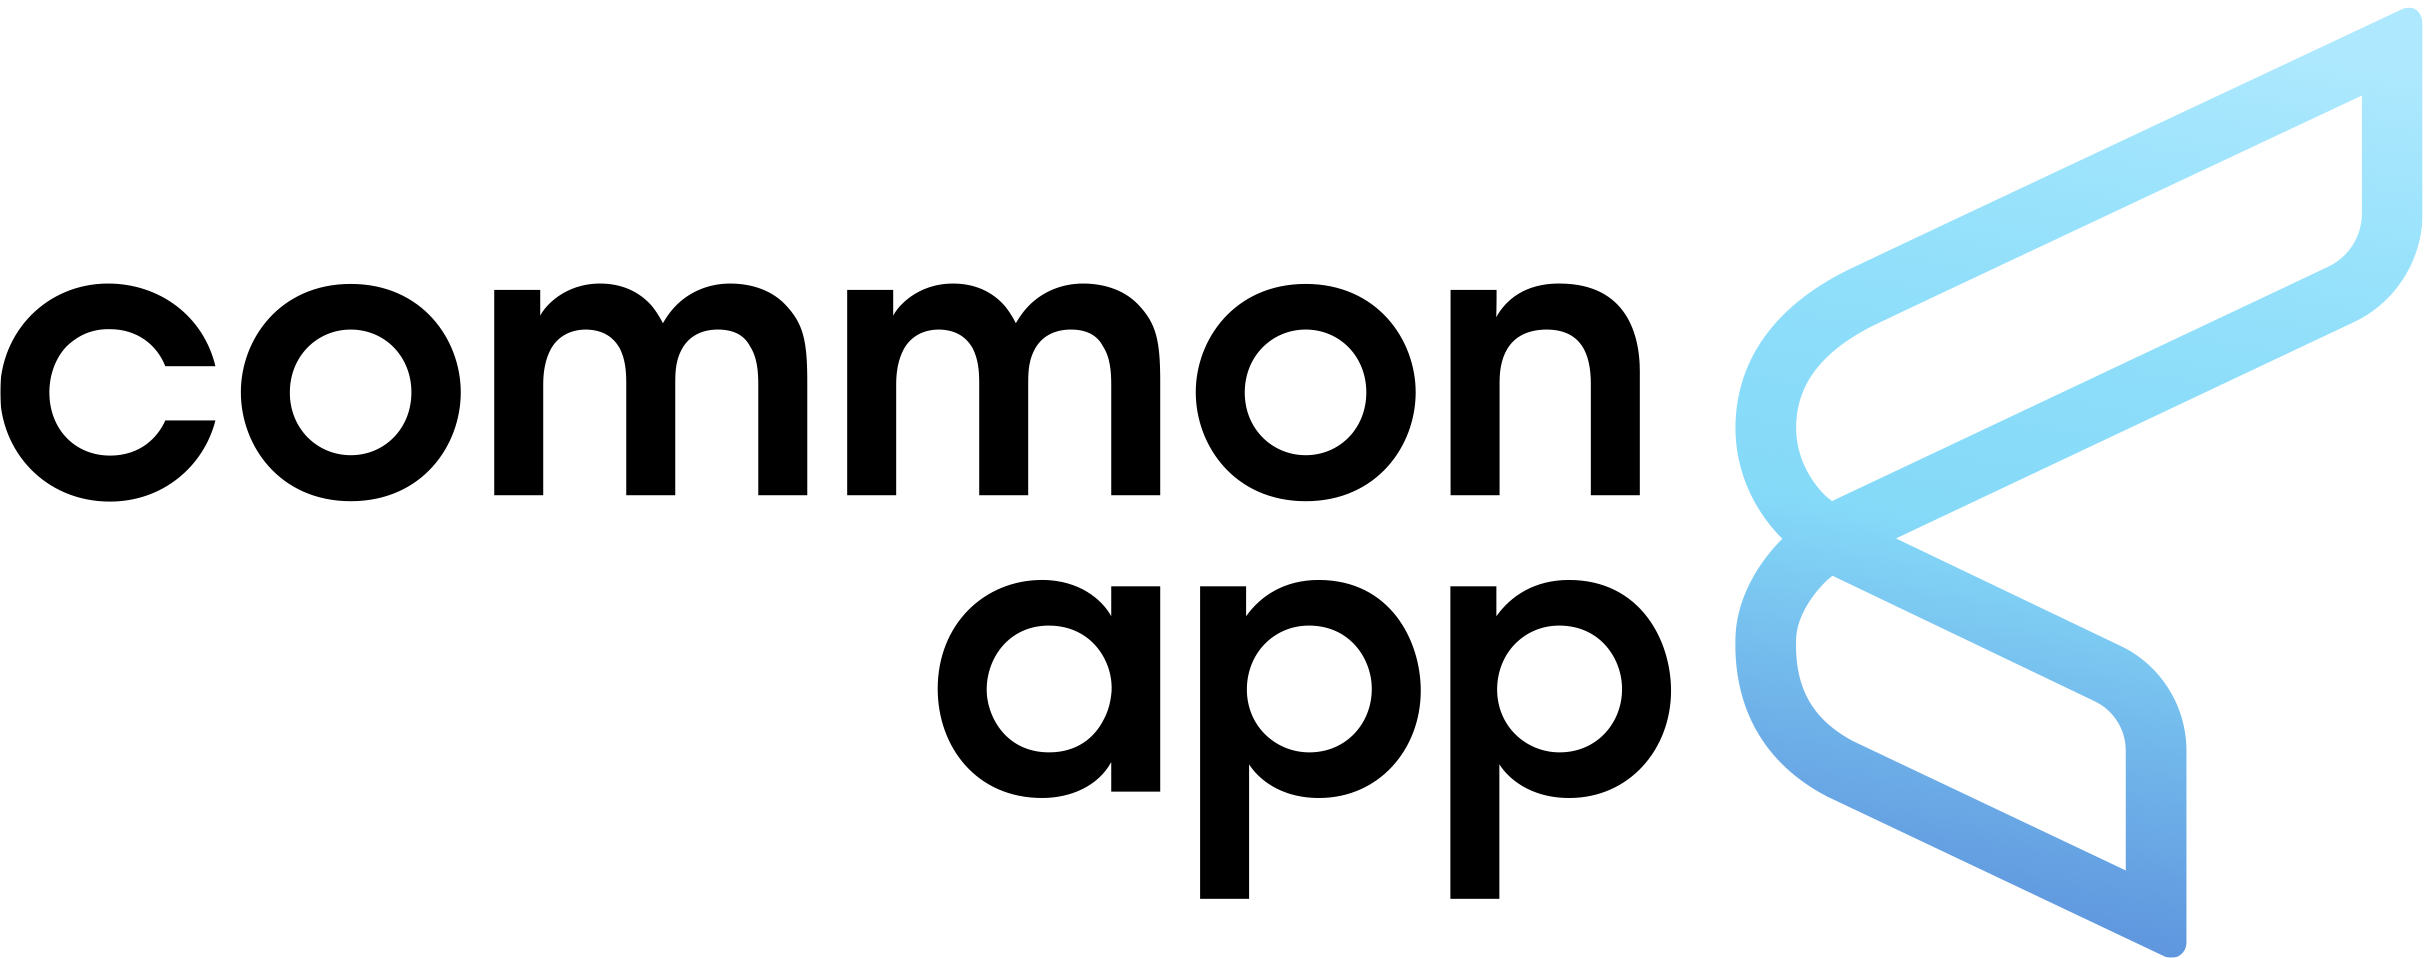 common app essay prompt 2